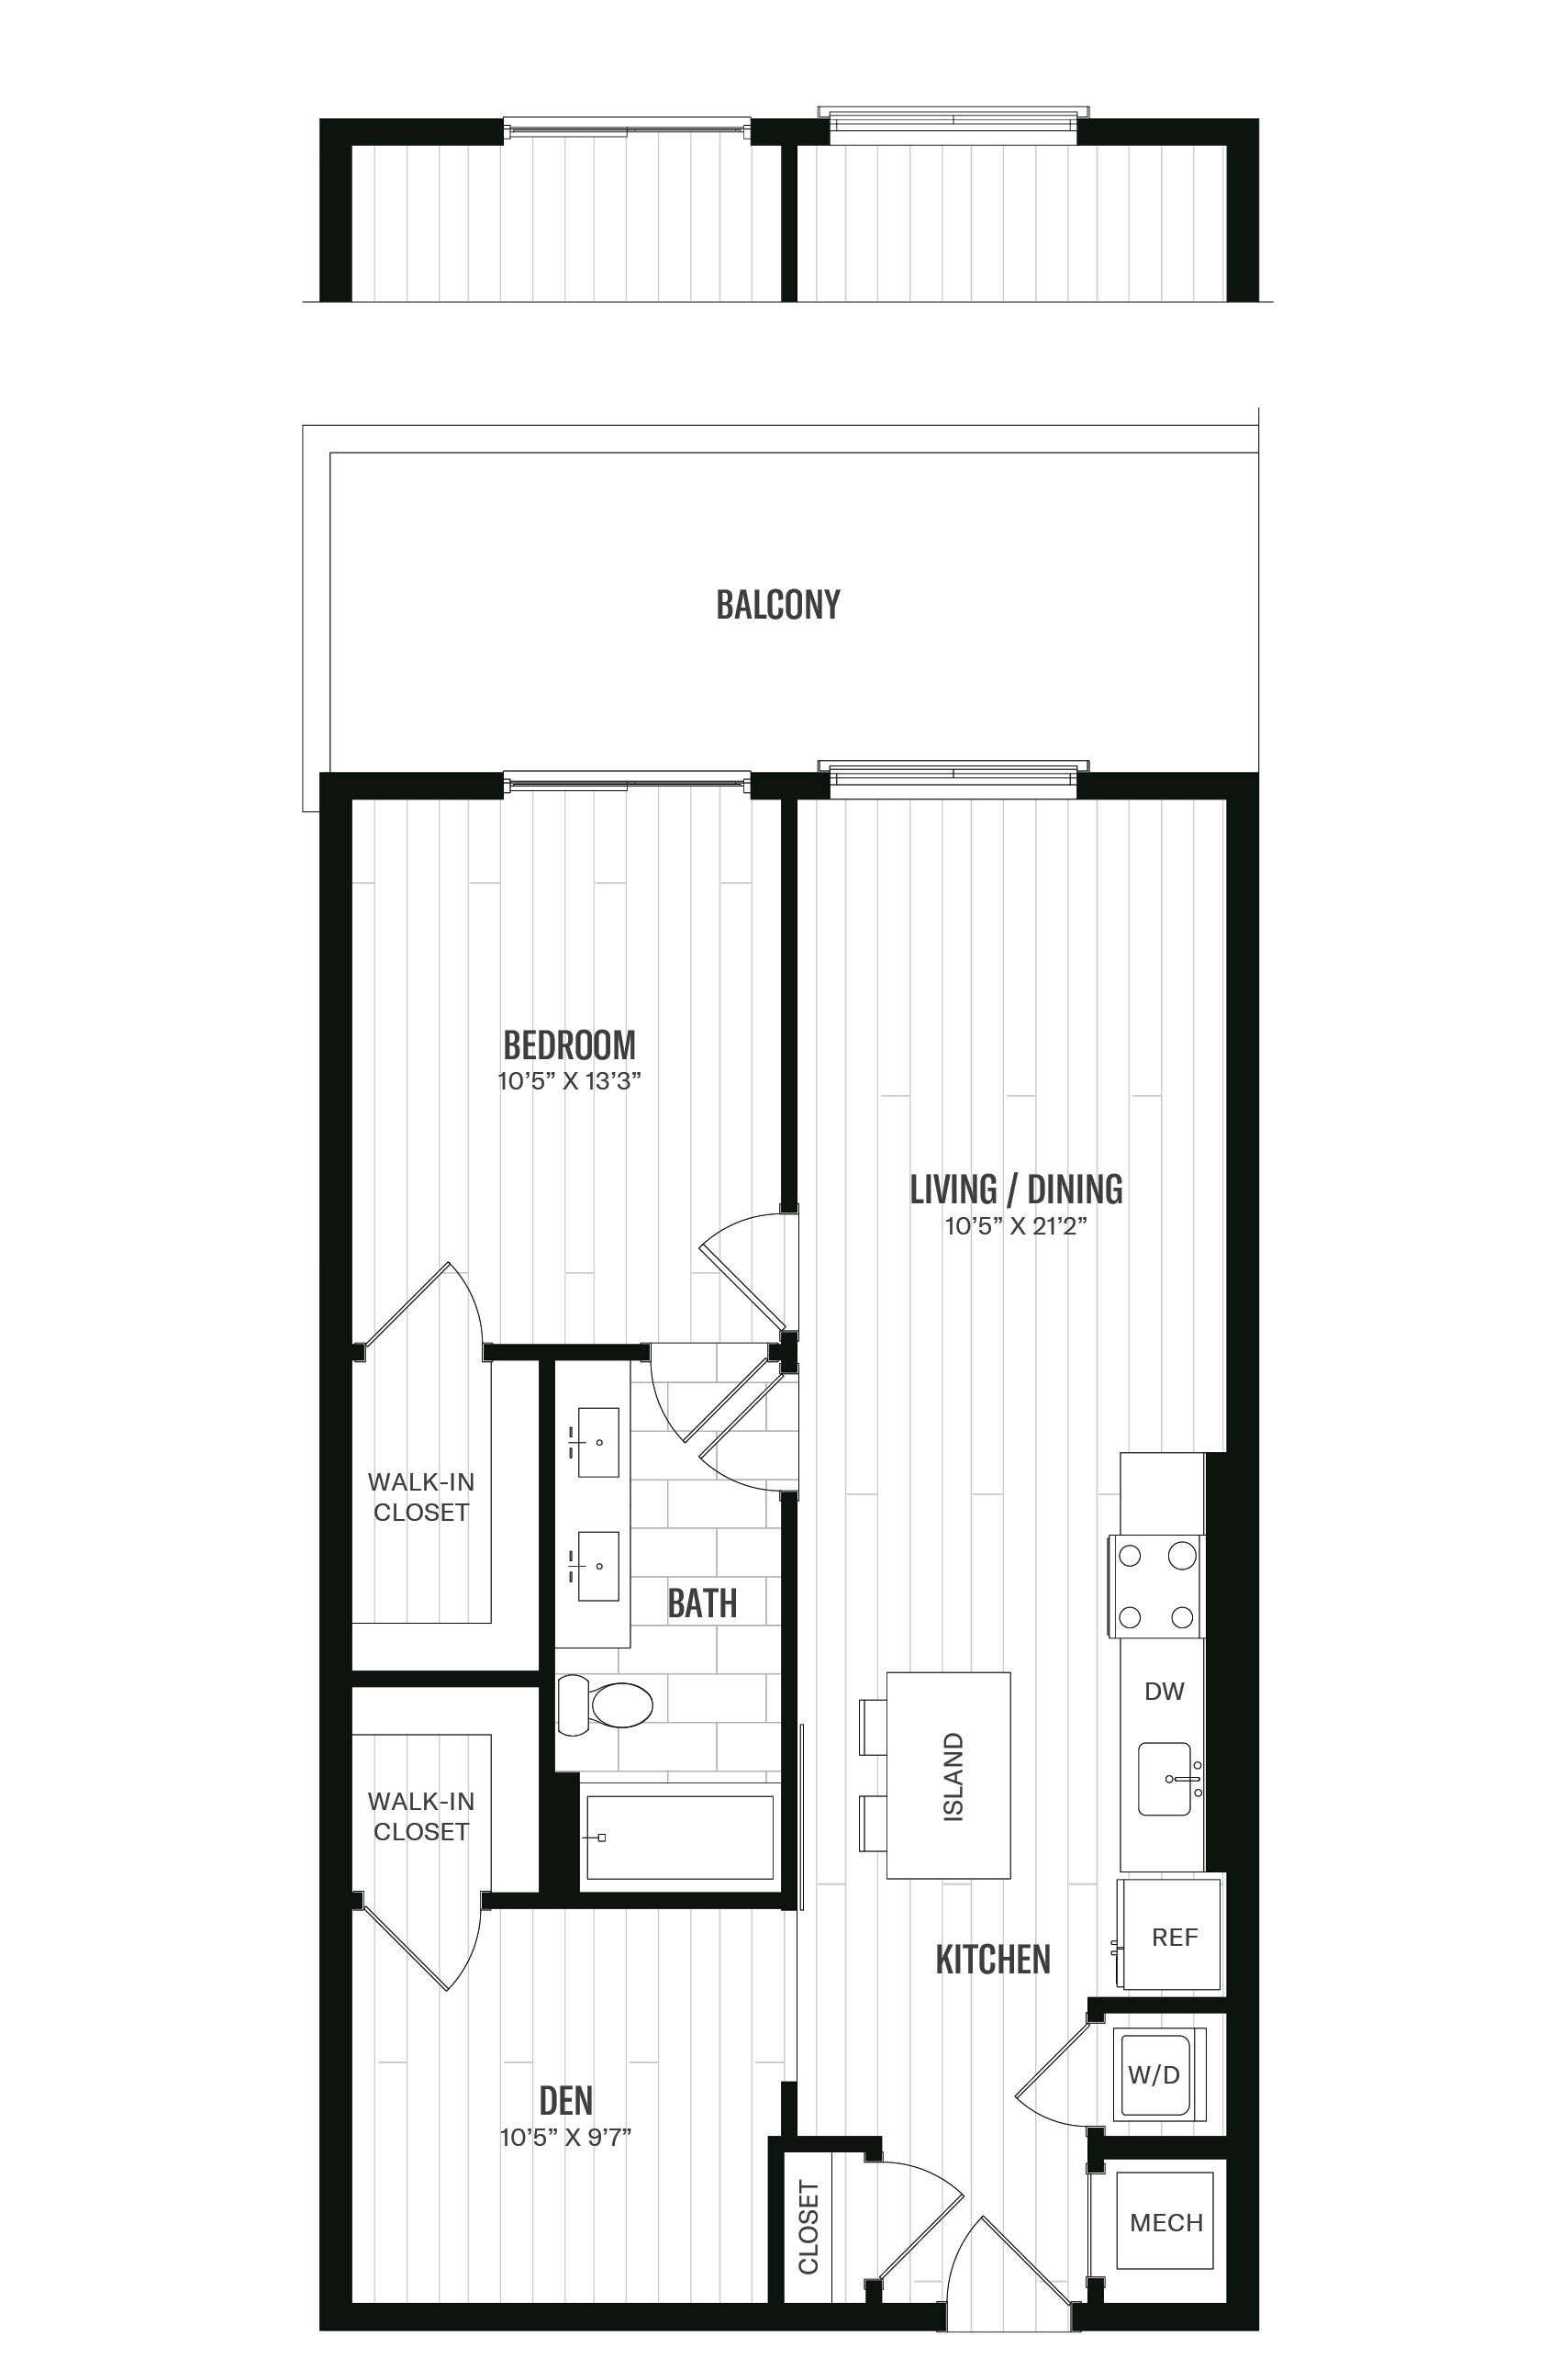 Floorplan image of unit 534